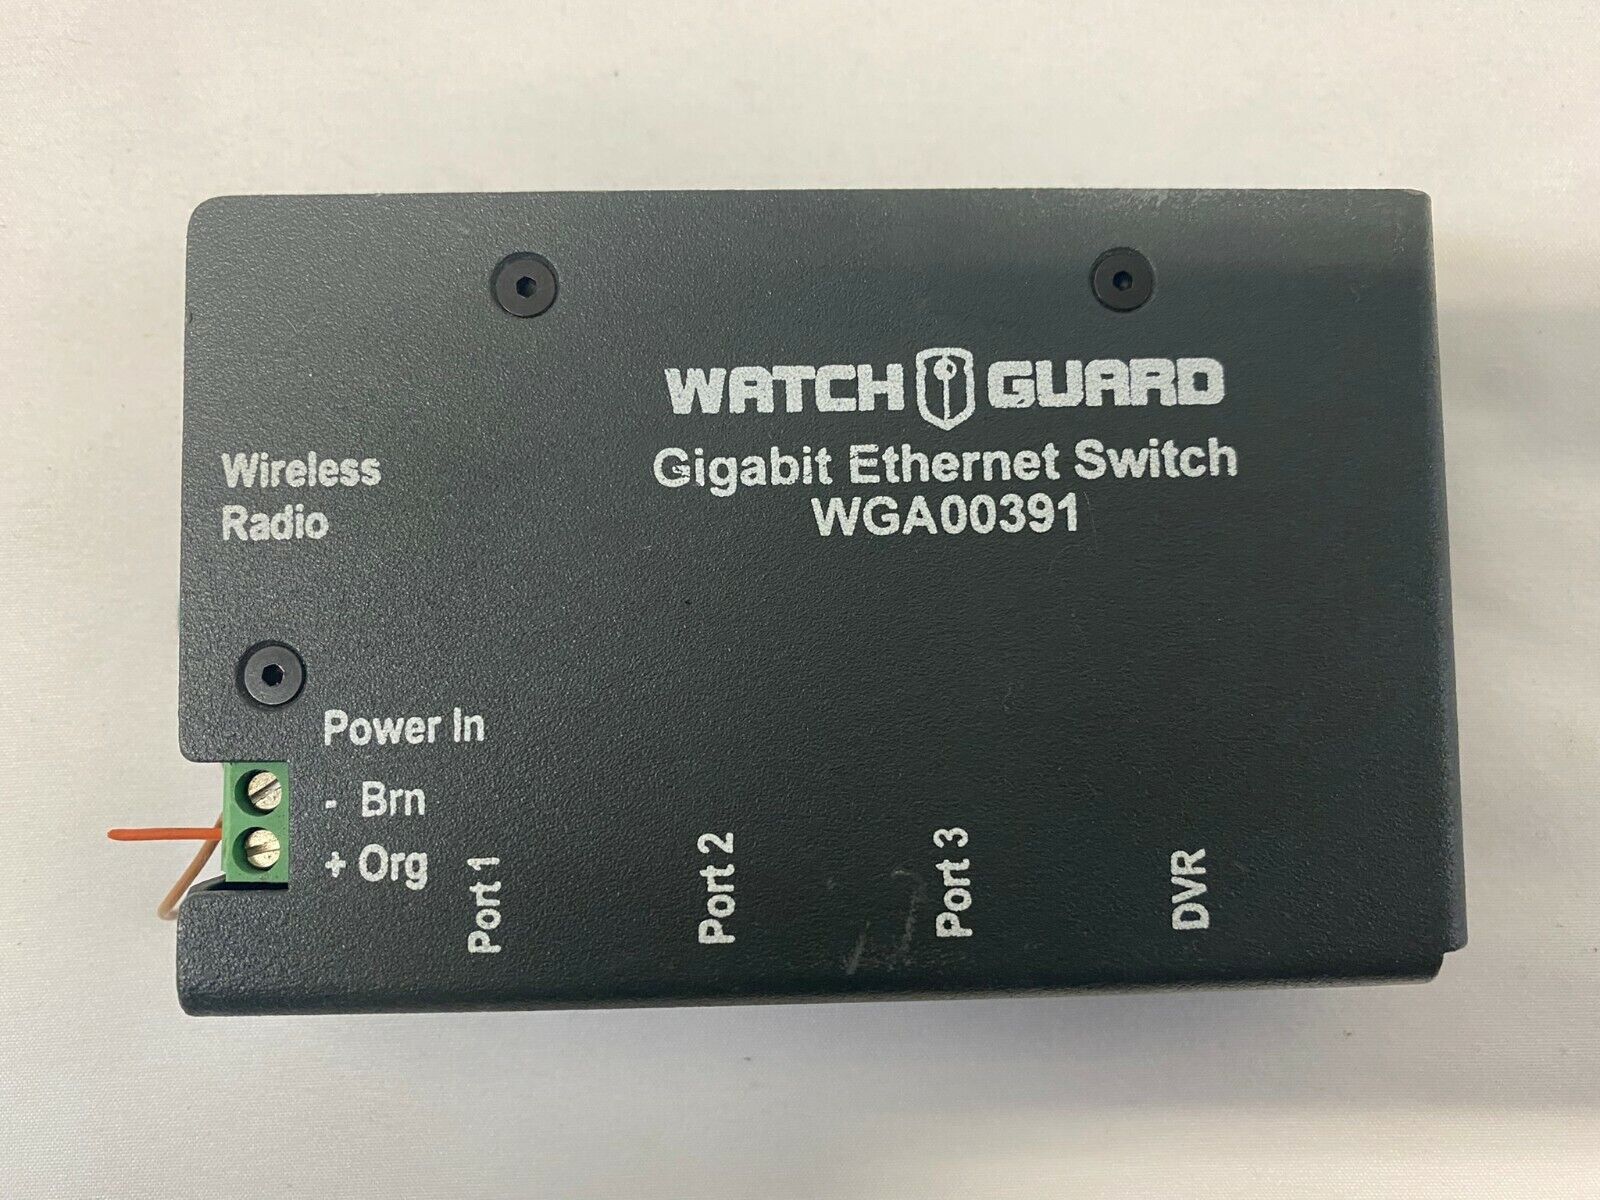 Watch Guard Gigabit Ethernet Switch WGA00391 Wireless Radio 3 Port with DVR Port